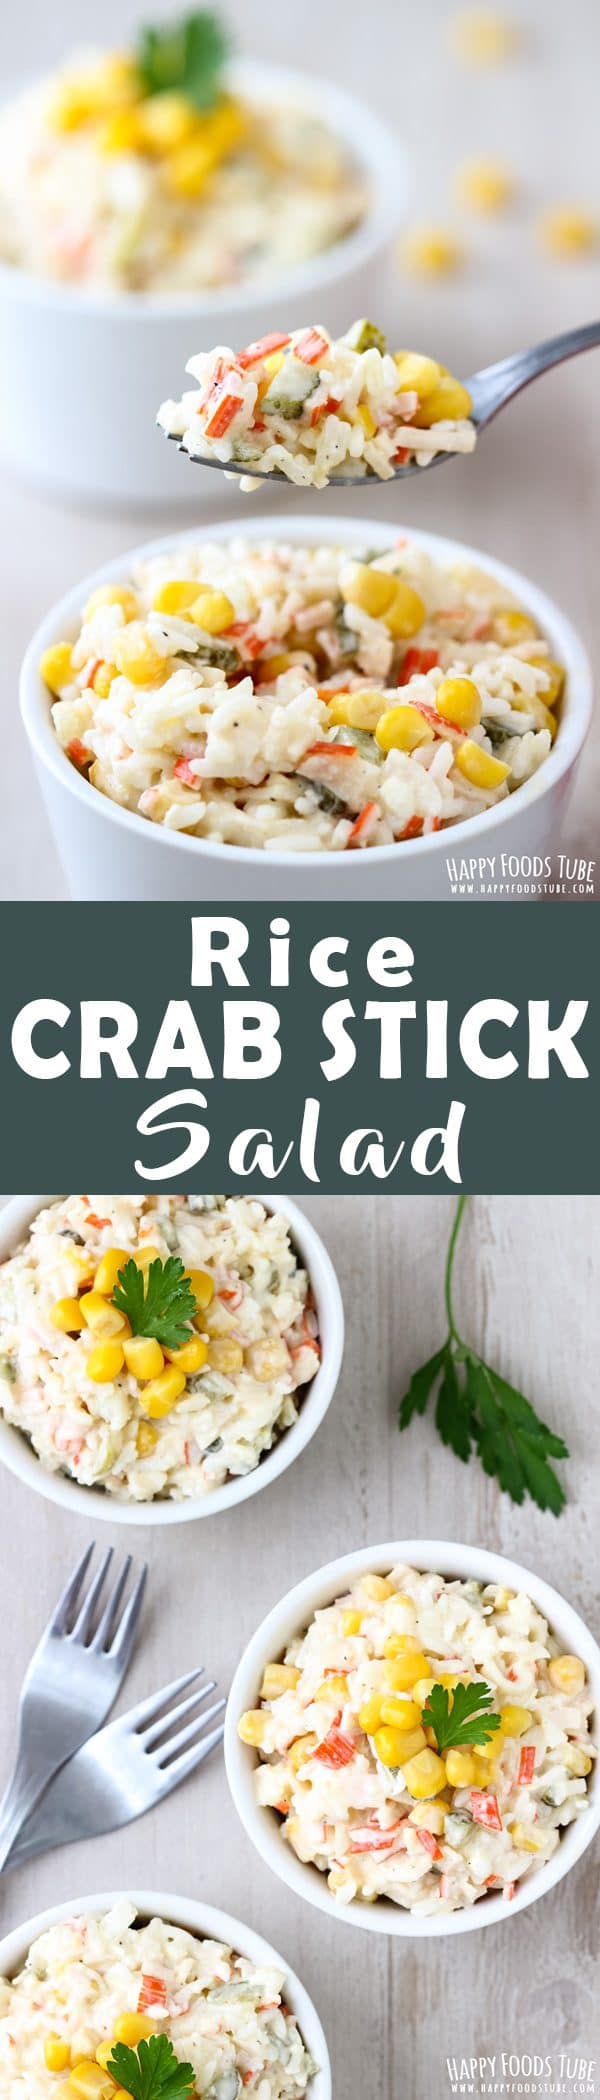 Rice Crab Stick Salad Recipe Picture